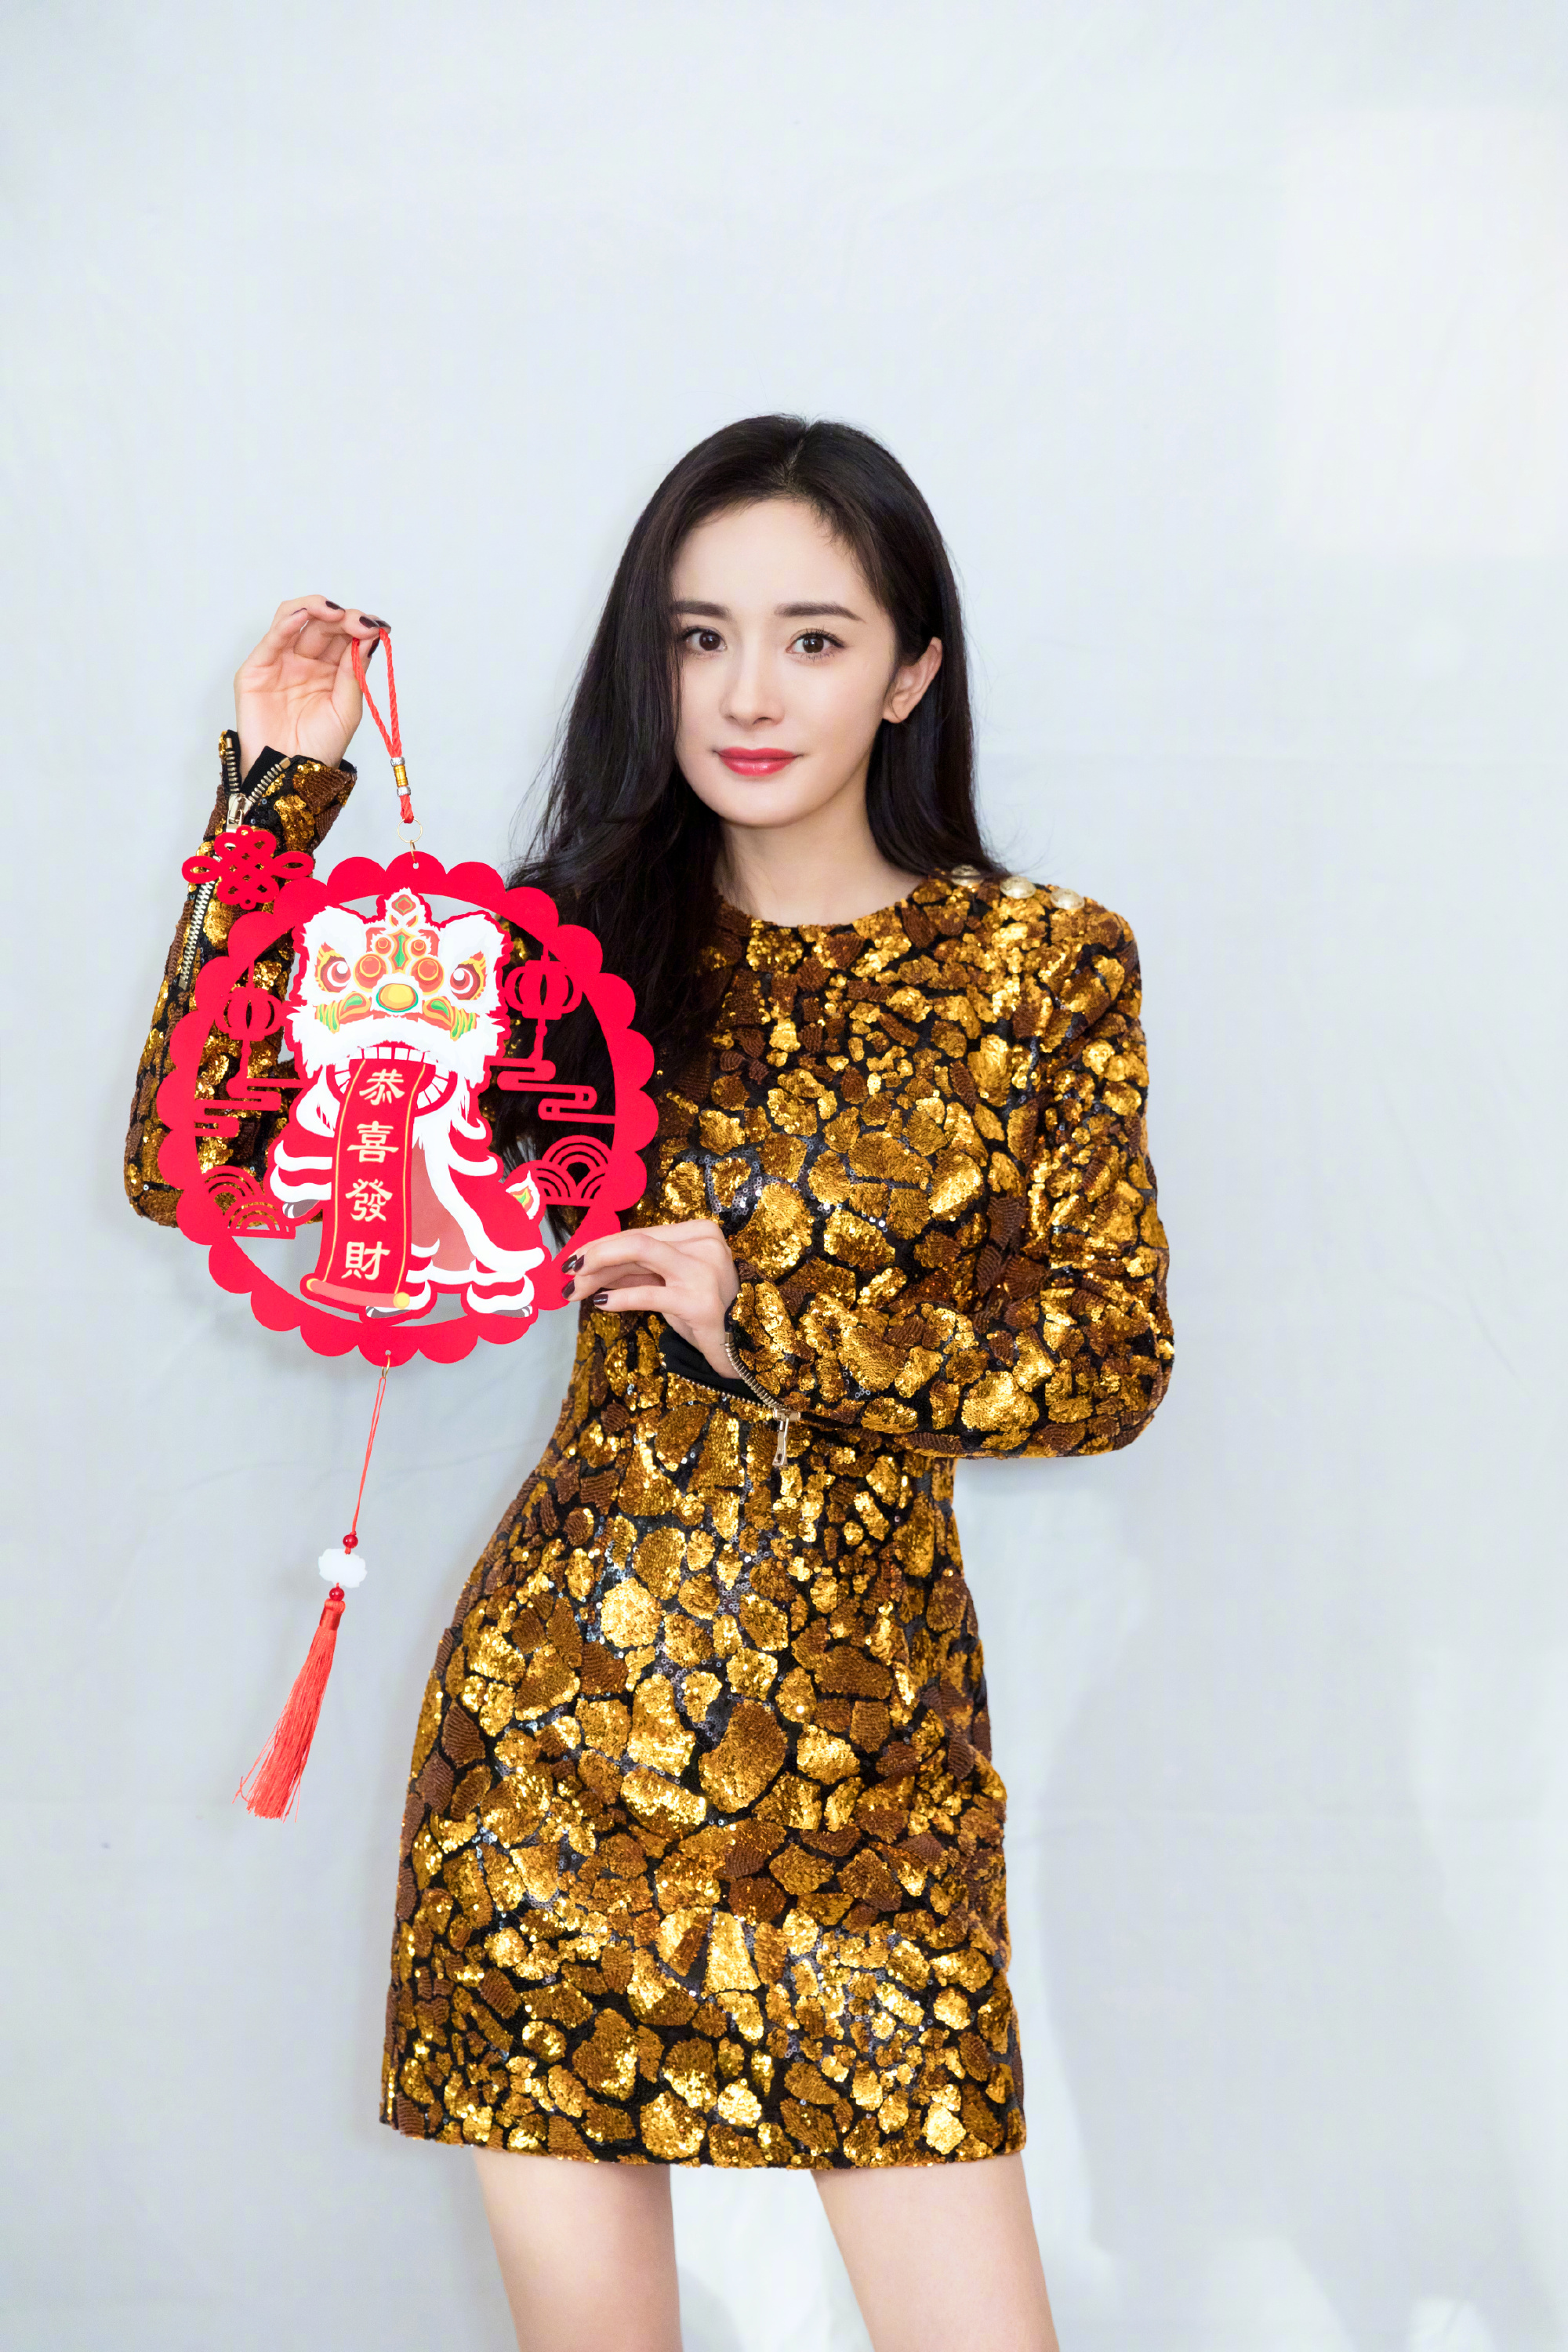 这次拍摄的新年写真,杨幂身穿了一条金色亮片包臀礼服裙,其中金色颜色